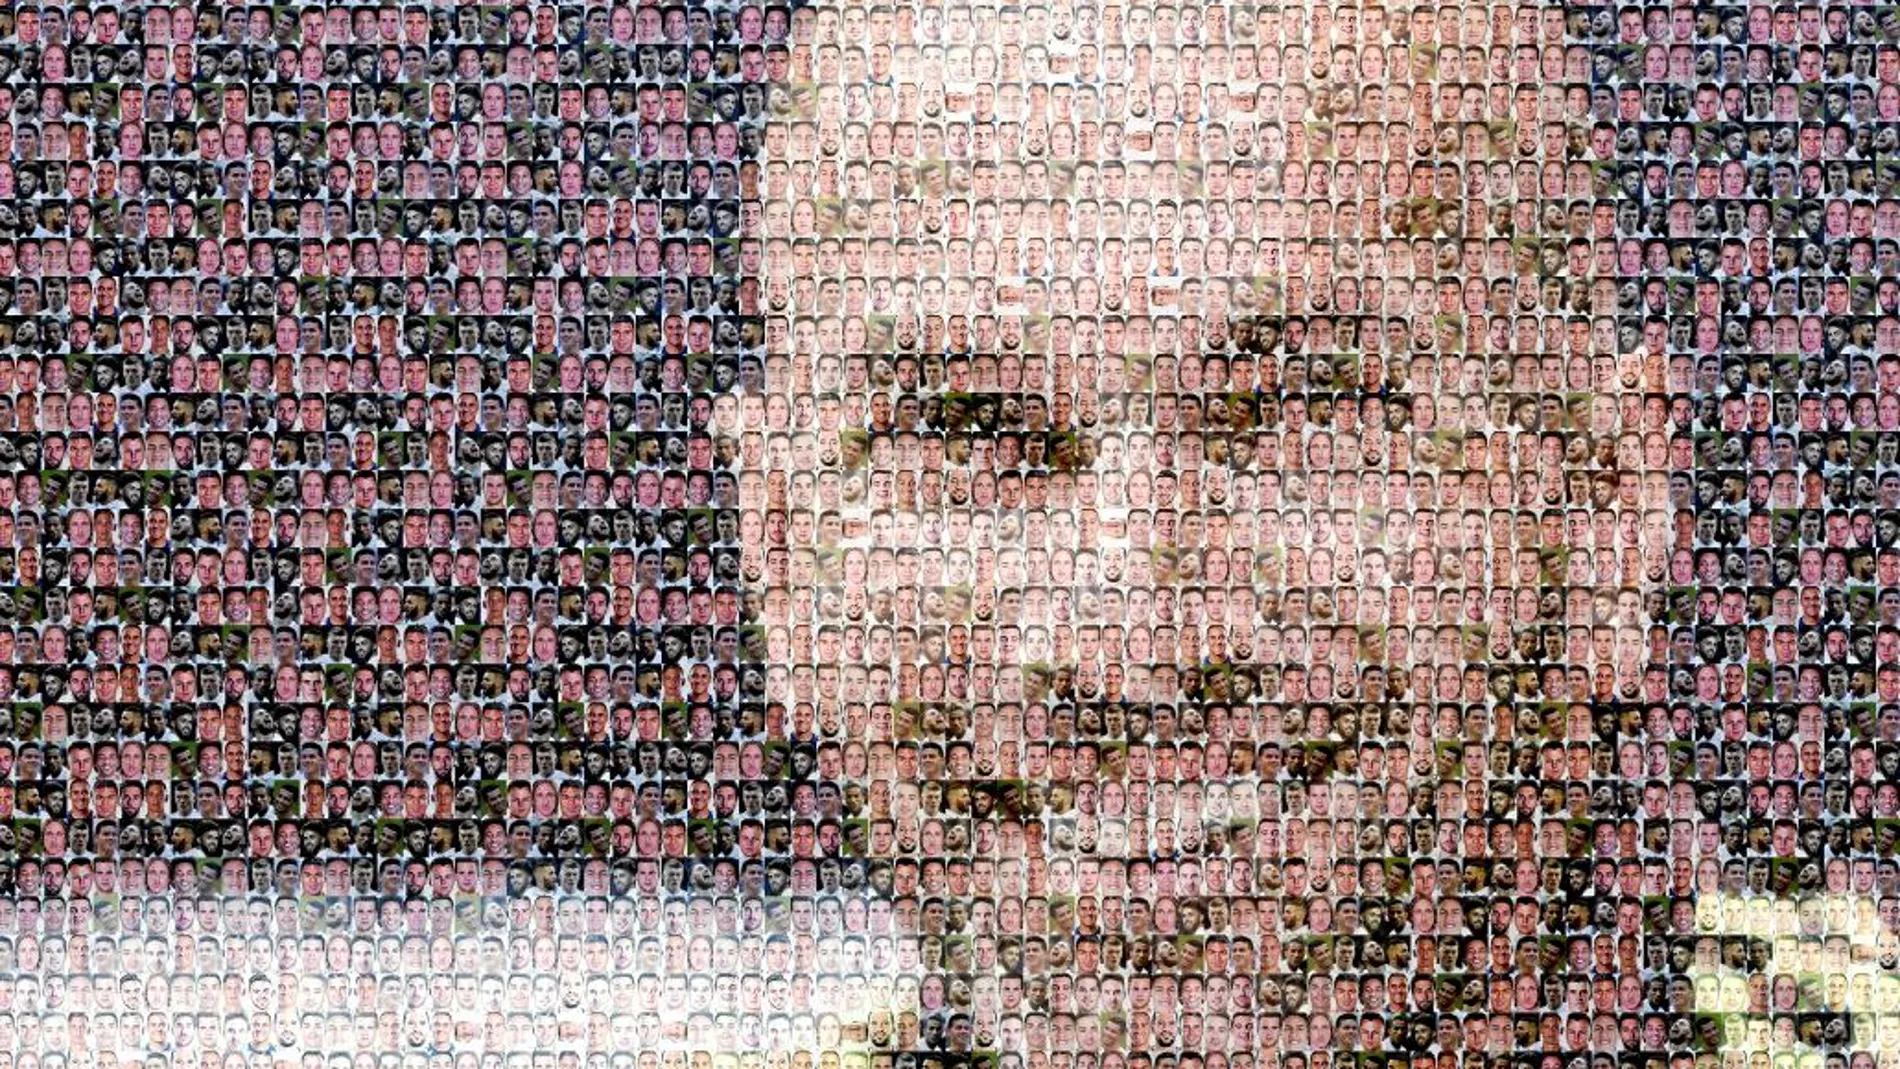 Este mosaico del técnico francés, compuesto por fotos de sus jugadores, iba a ser la portada de Deportes con el titular «Todos con Zidane»